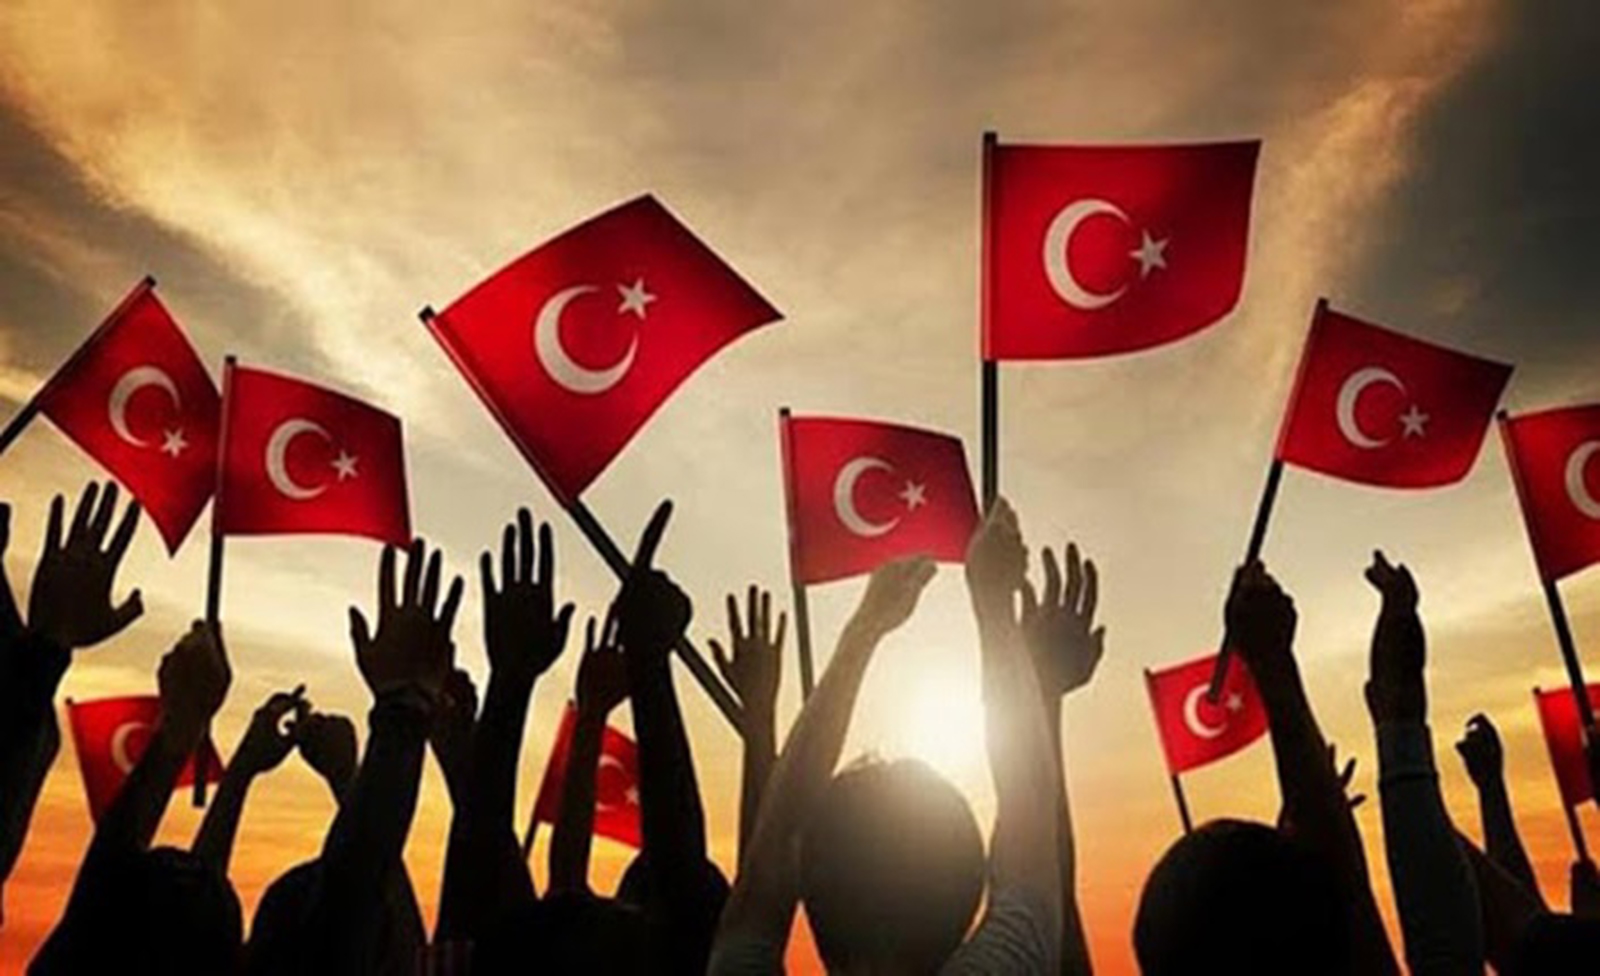 Türkiye Tarihinde Yaşanmış Önemli Olaylar Sebepleri ve Sonuçları